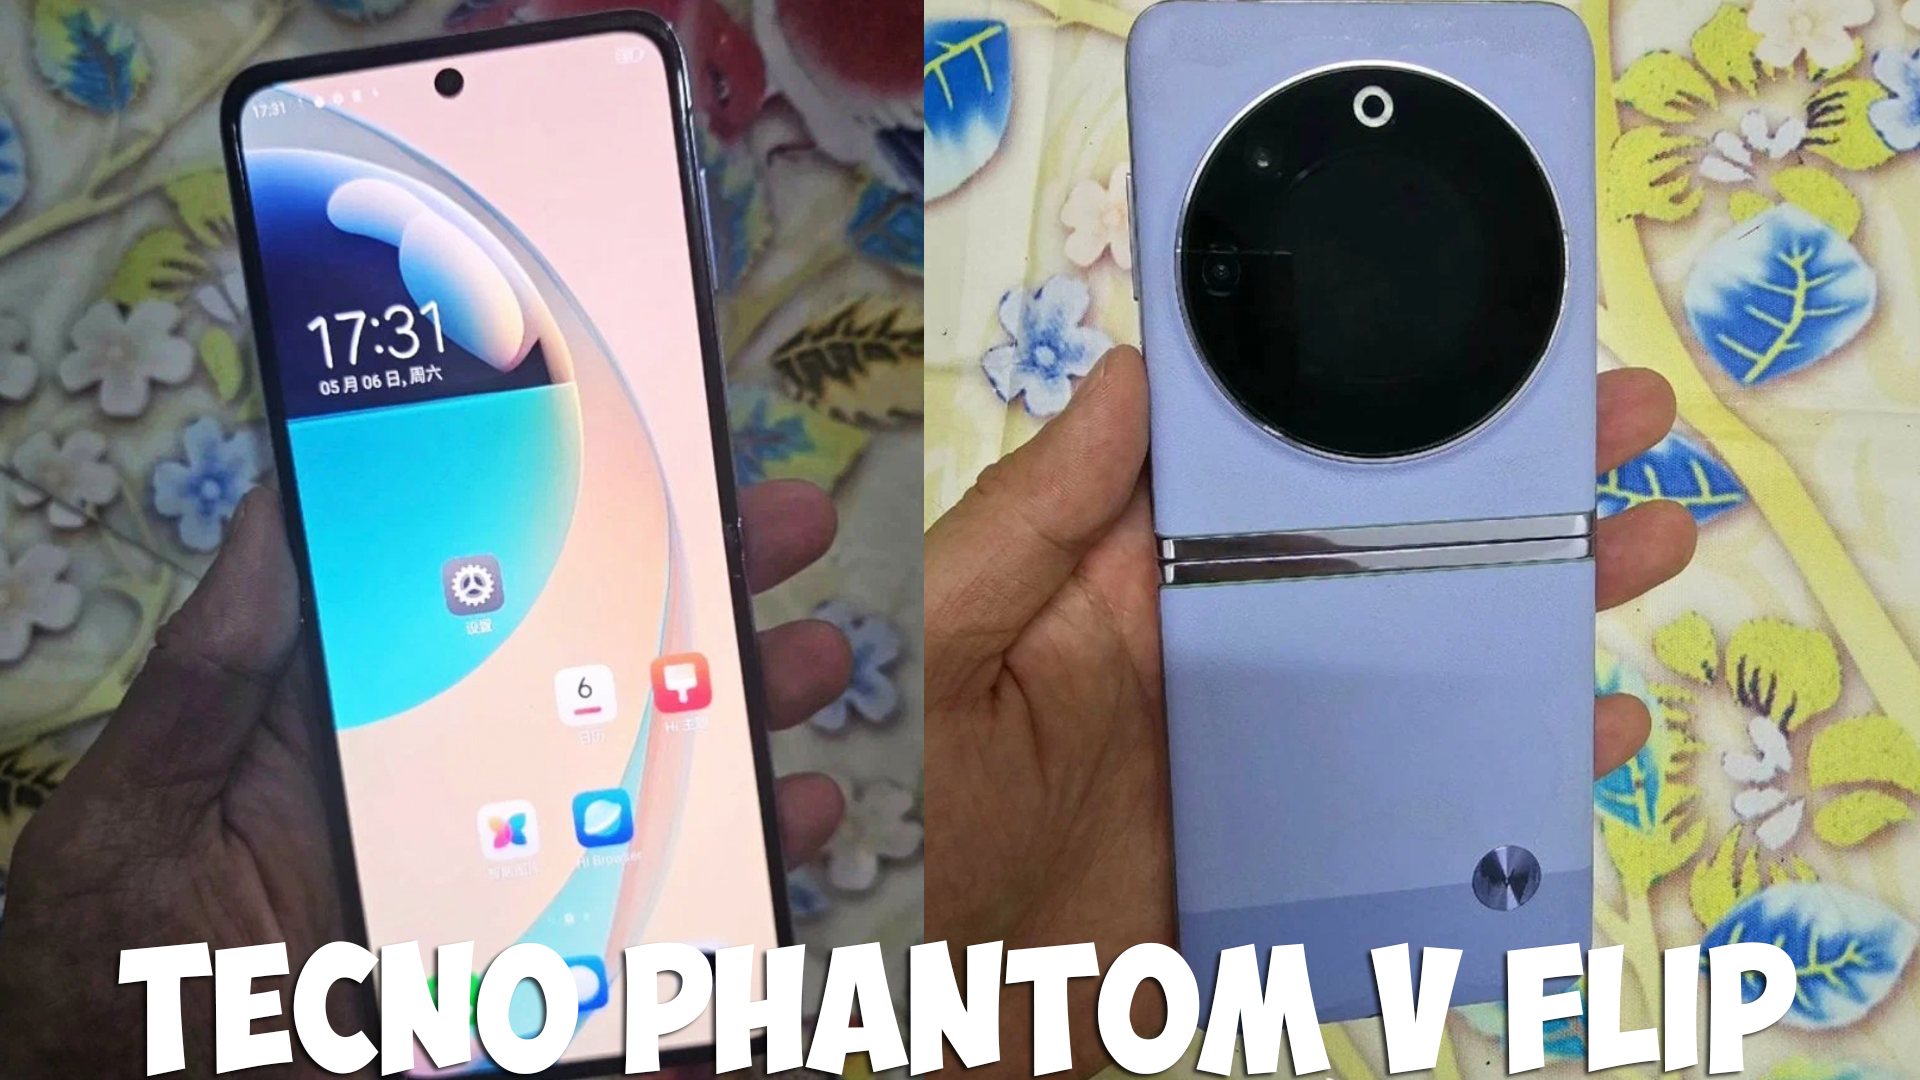 Tecno phantom v flip 8. Techno Phantom v Flip. Tecno Phantom 5 Flip. Techno Fantom Flip 5. Phantom v Flip 5g.